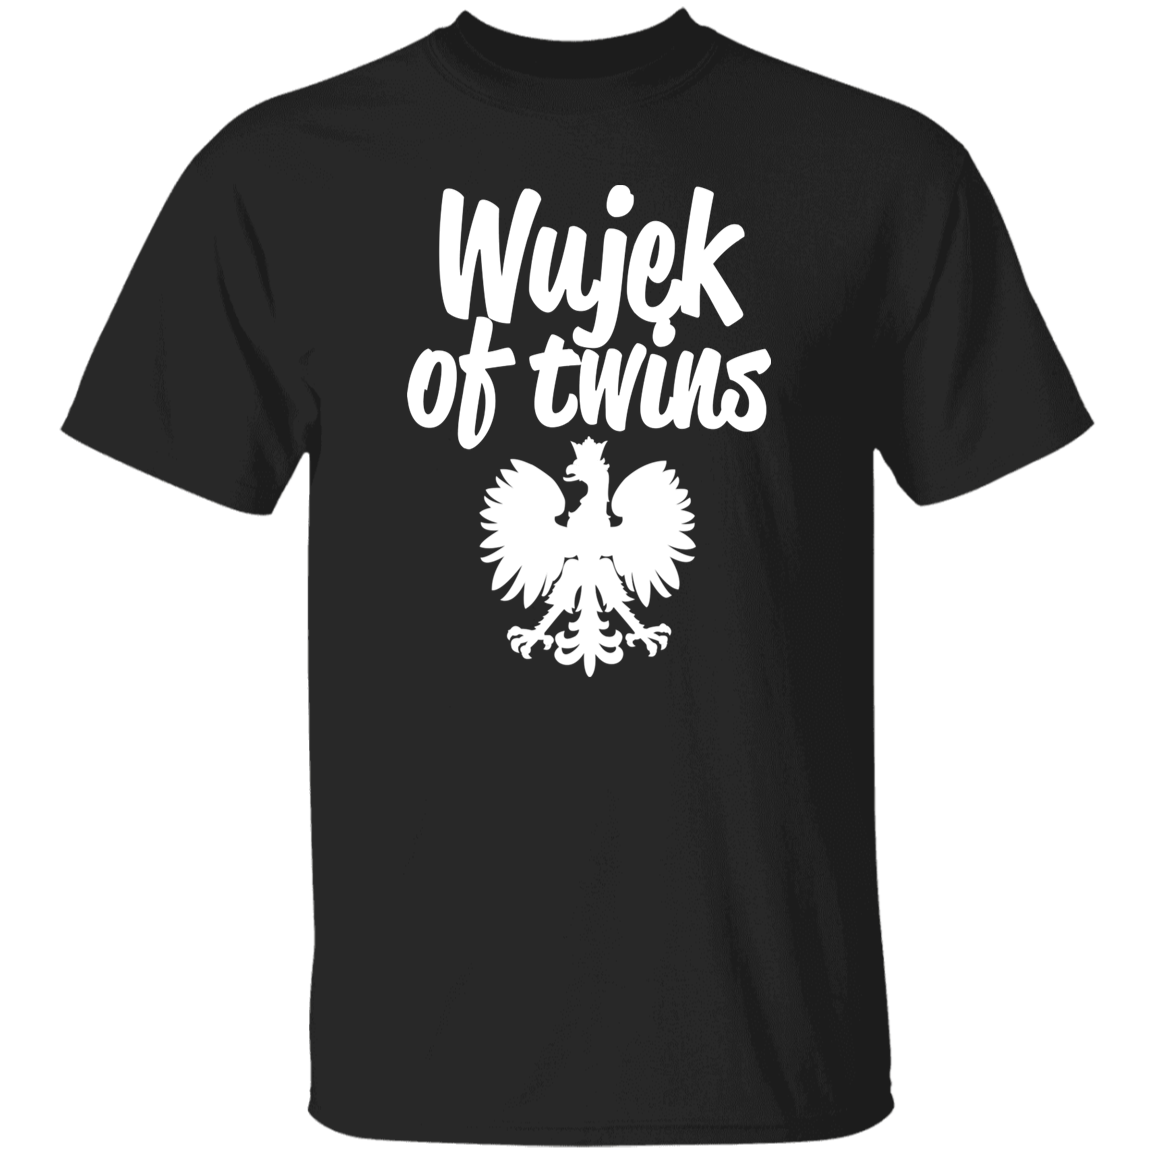 Wujek of Twins Apparel CustomCat G500 5.3 oz. T-Shirt Black S